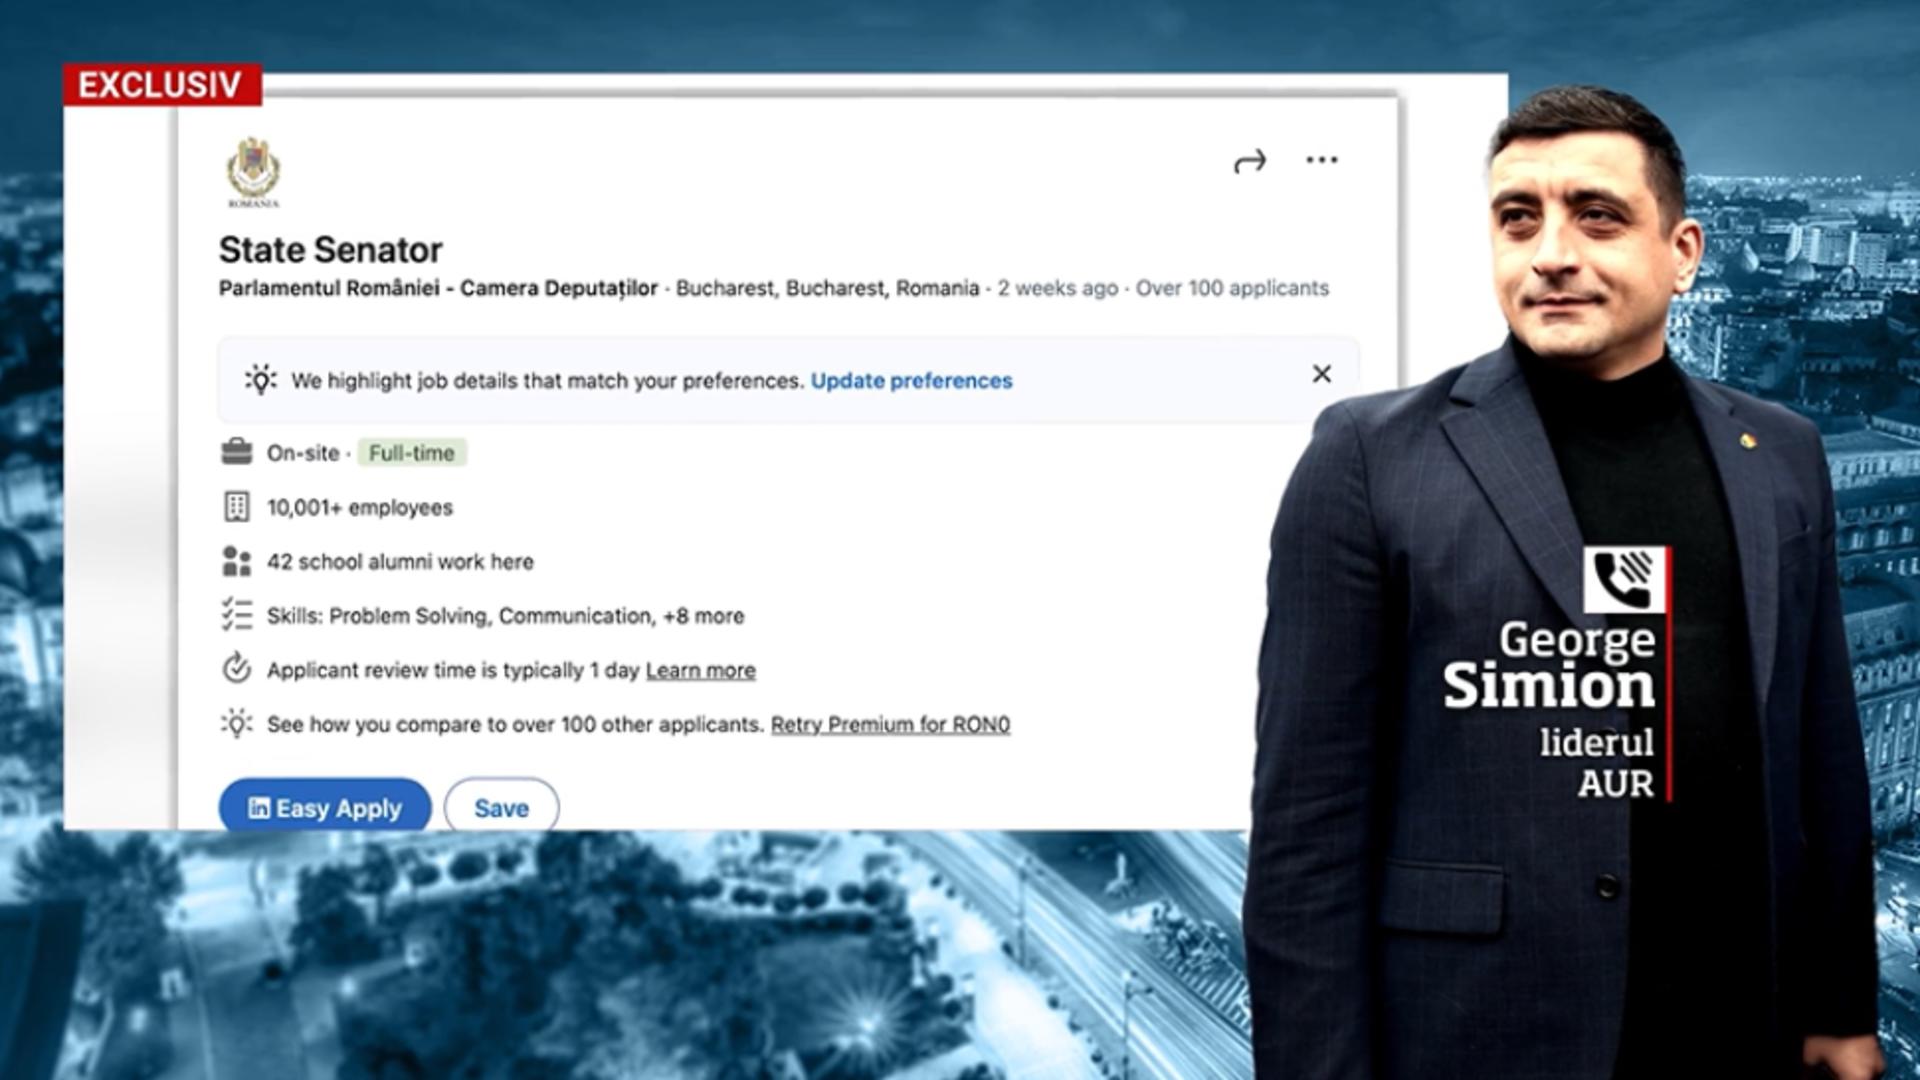 George Simion recrutează viitori senatori pe LinkedIn: cum sună anunțul postat pe contul său oficial